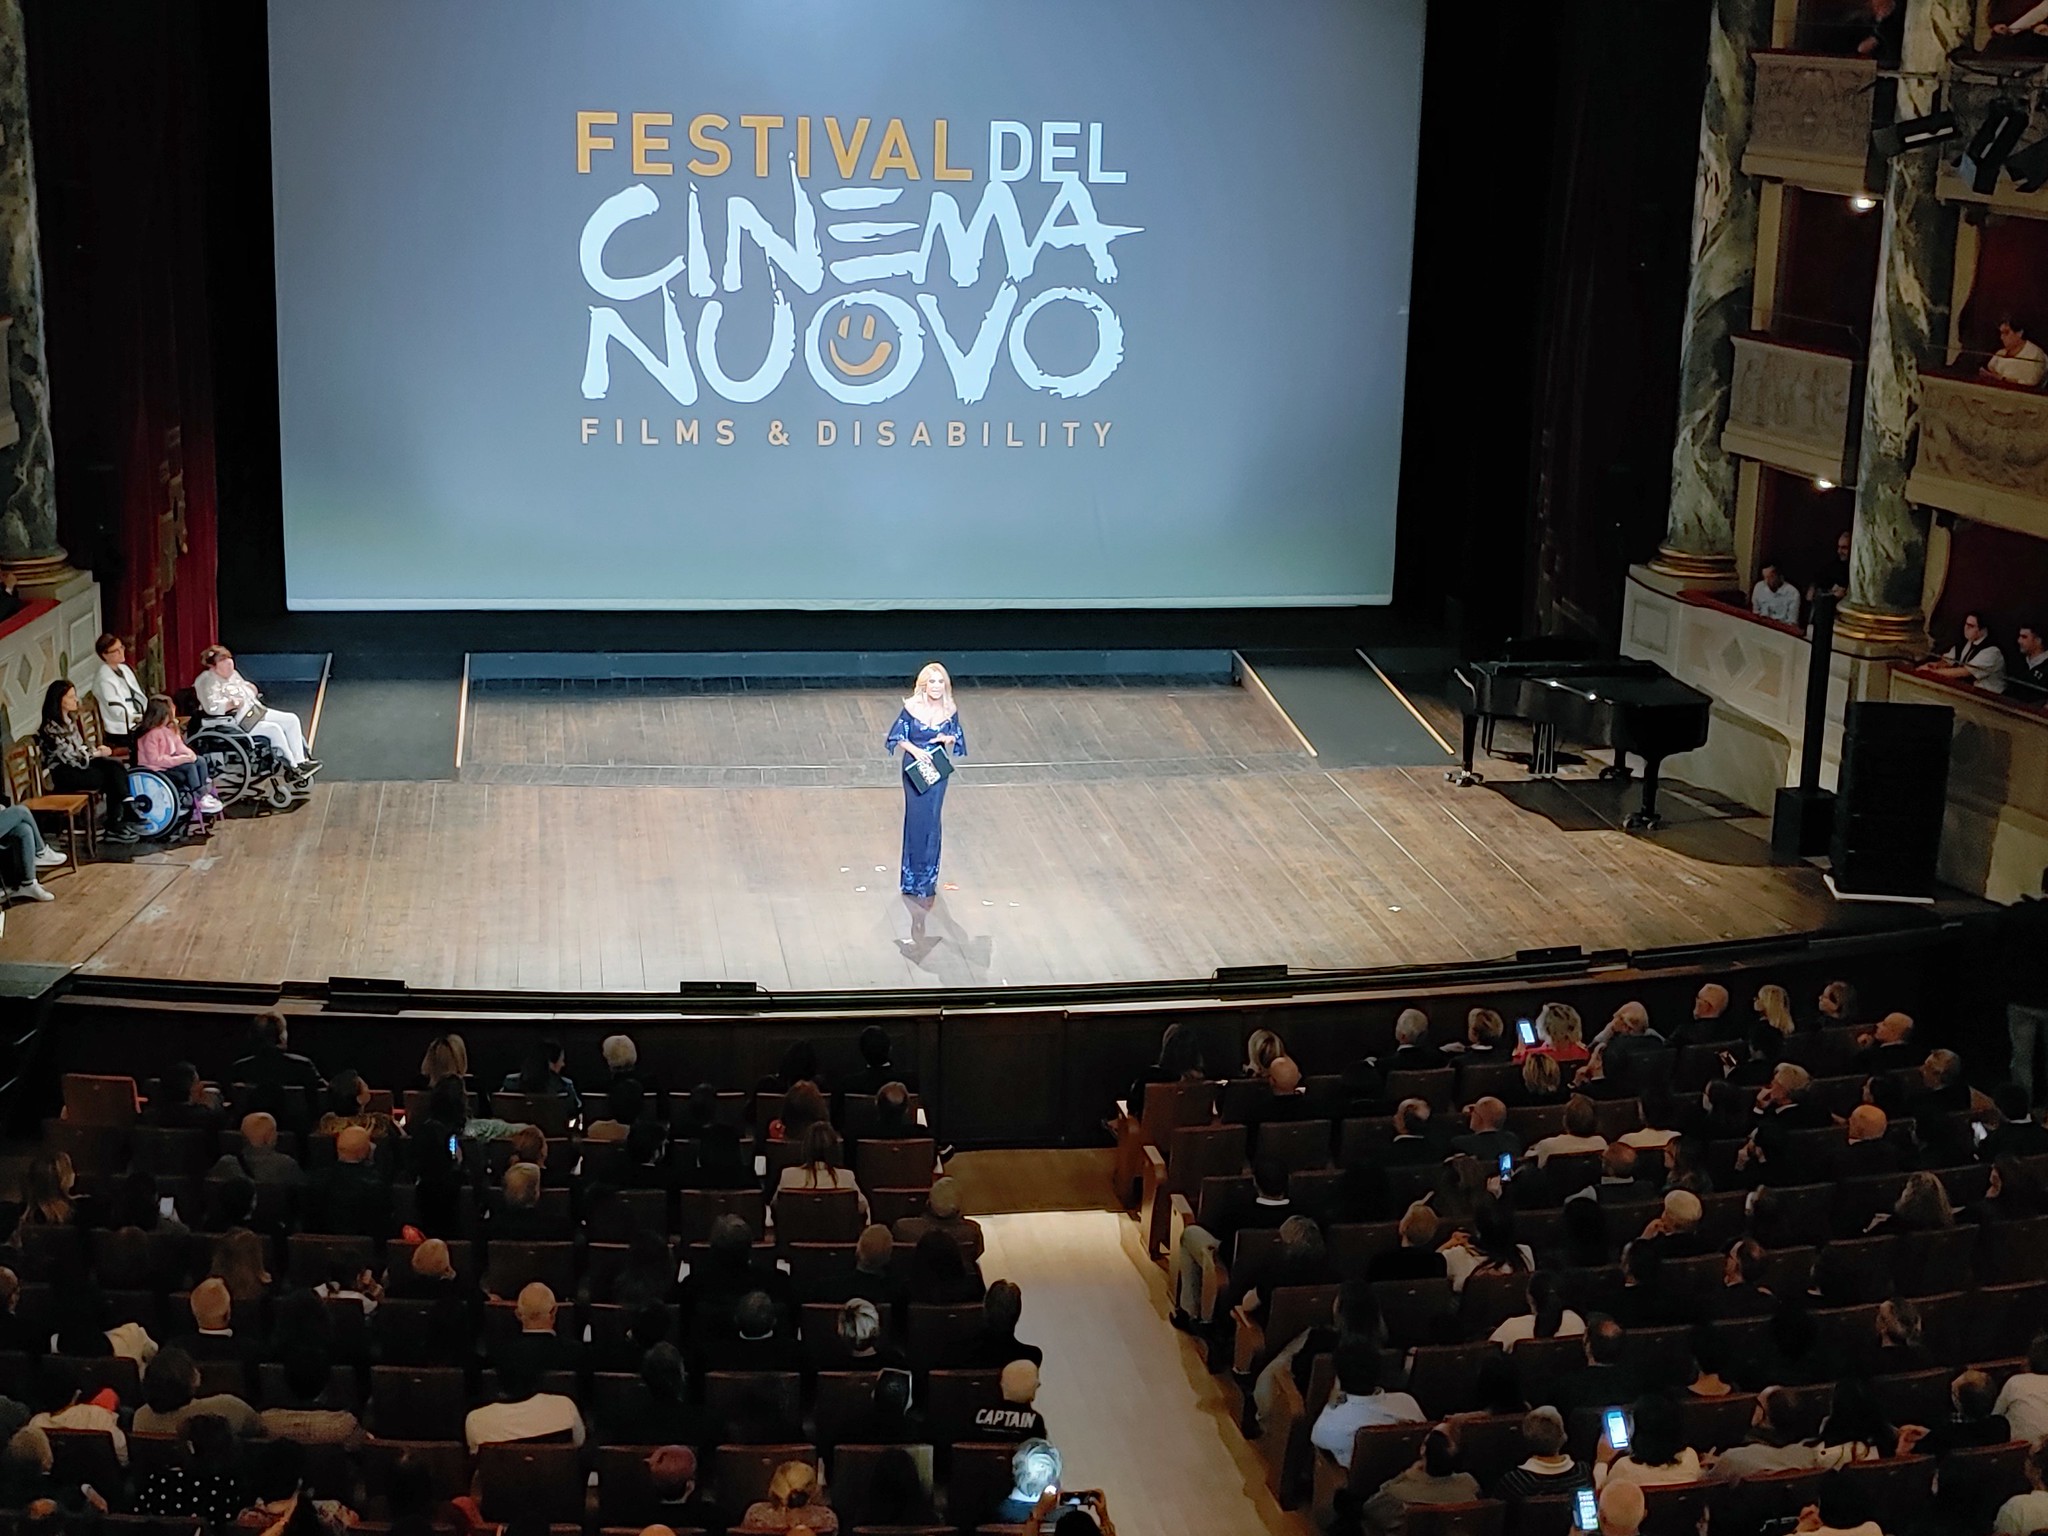 Festival Cinema Nuovo 2022 - 14 - Festival del Cinema Nuovo 2022